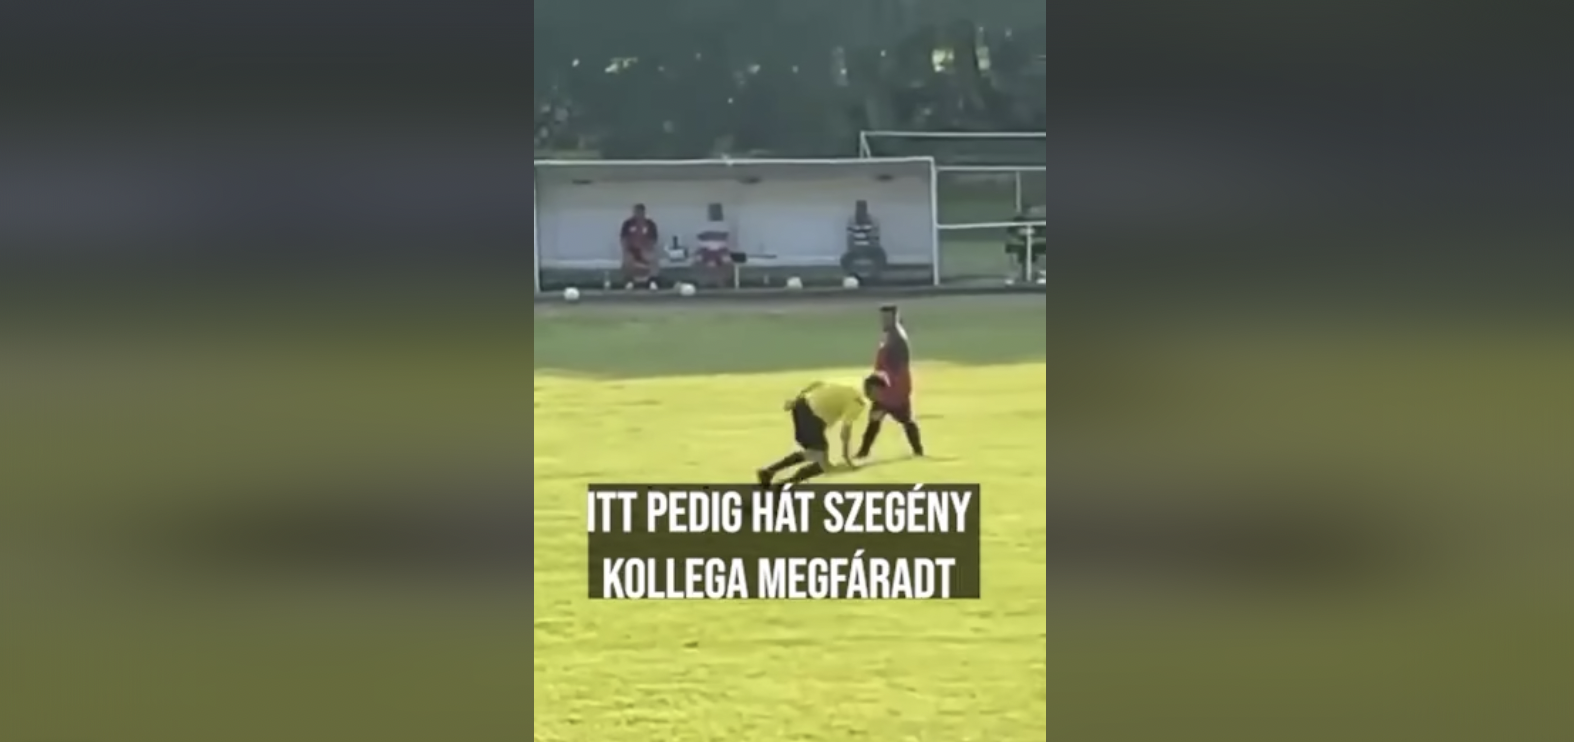 Világcsúcs: a Felsőnána-Iregszemcse játékvezetője egyszer csak úgy elfáradt, hogy meccs közben ledőlt pihenni kicsit a pálya közepén